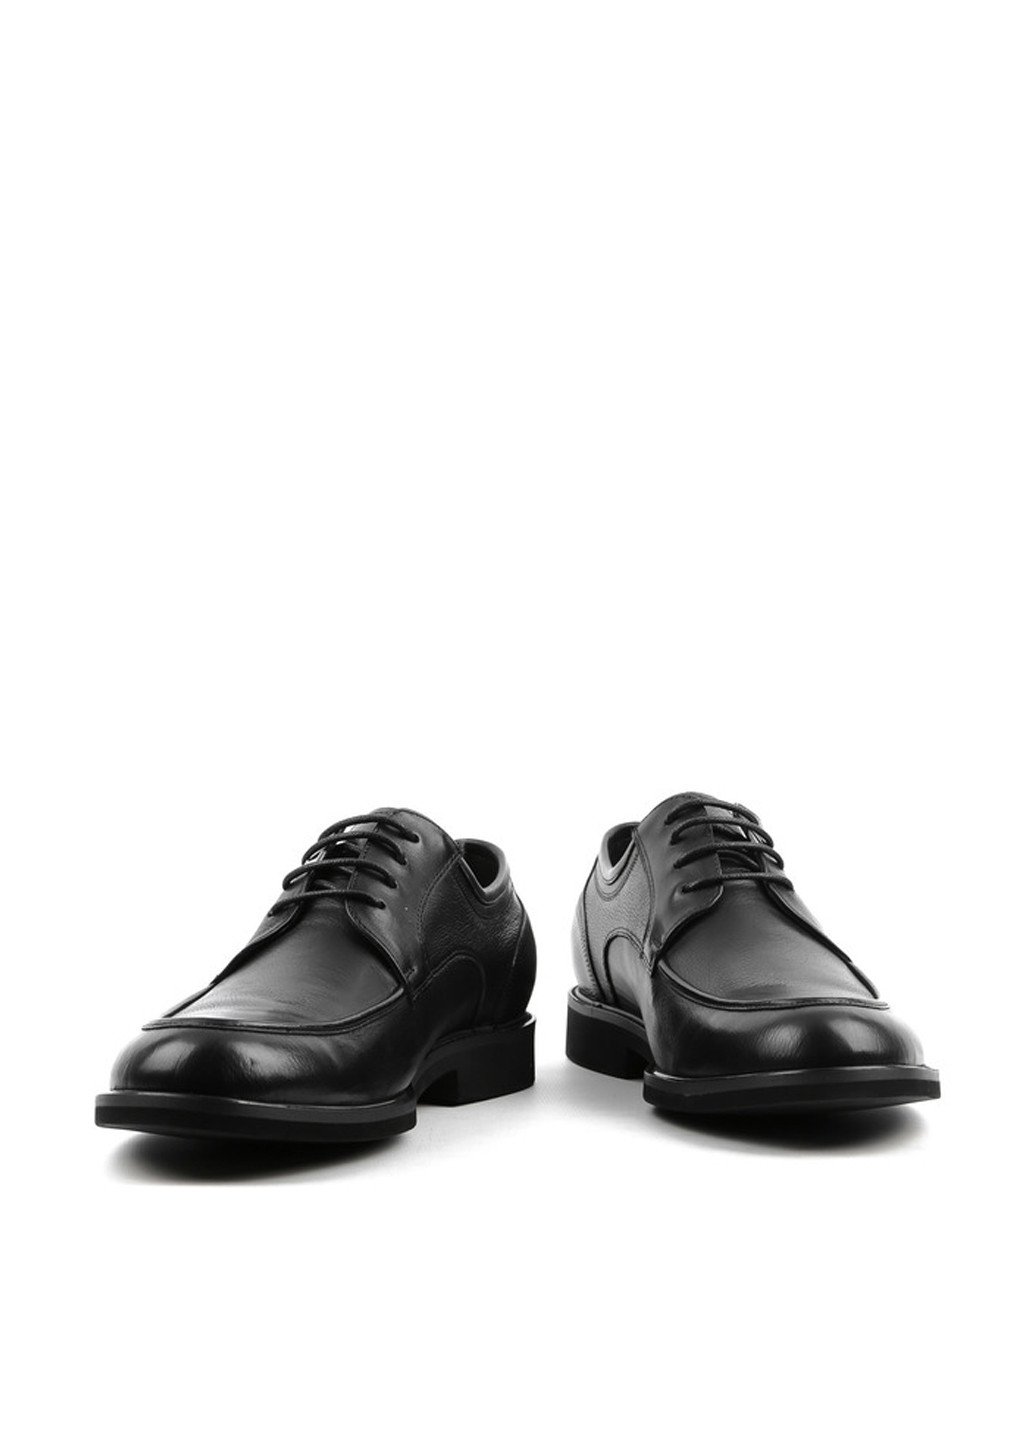 Черные классические туфли Basconi